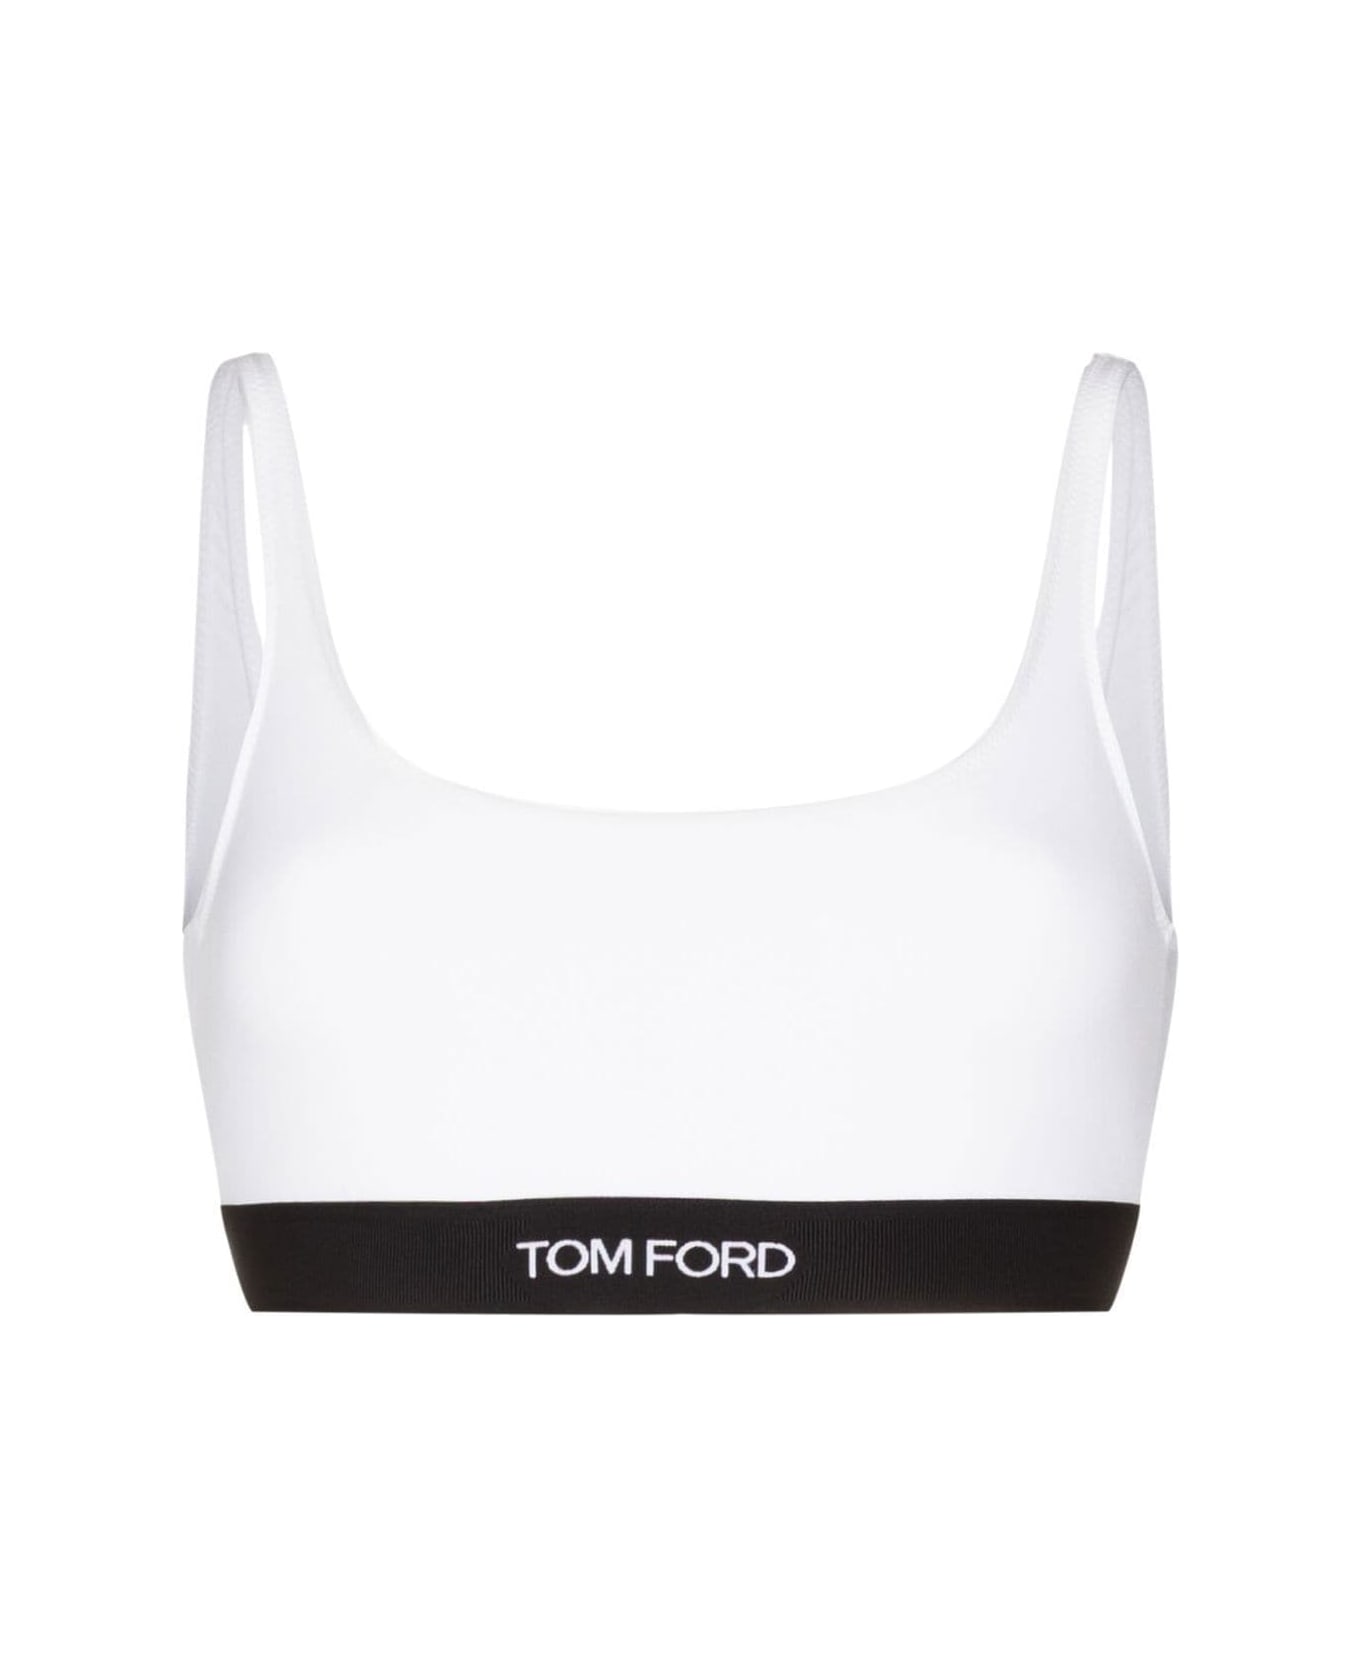 Tom Ford Underwear Bra - White